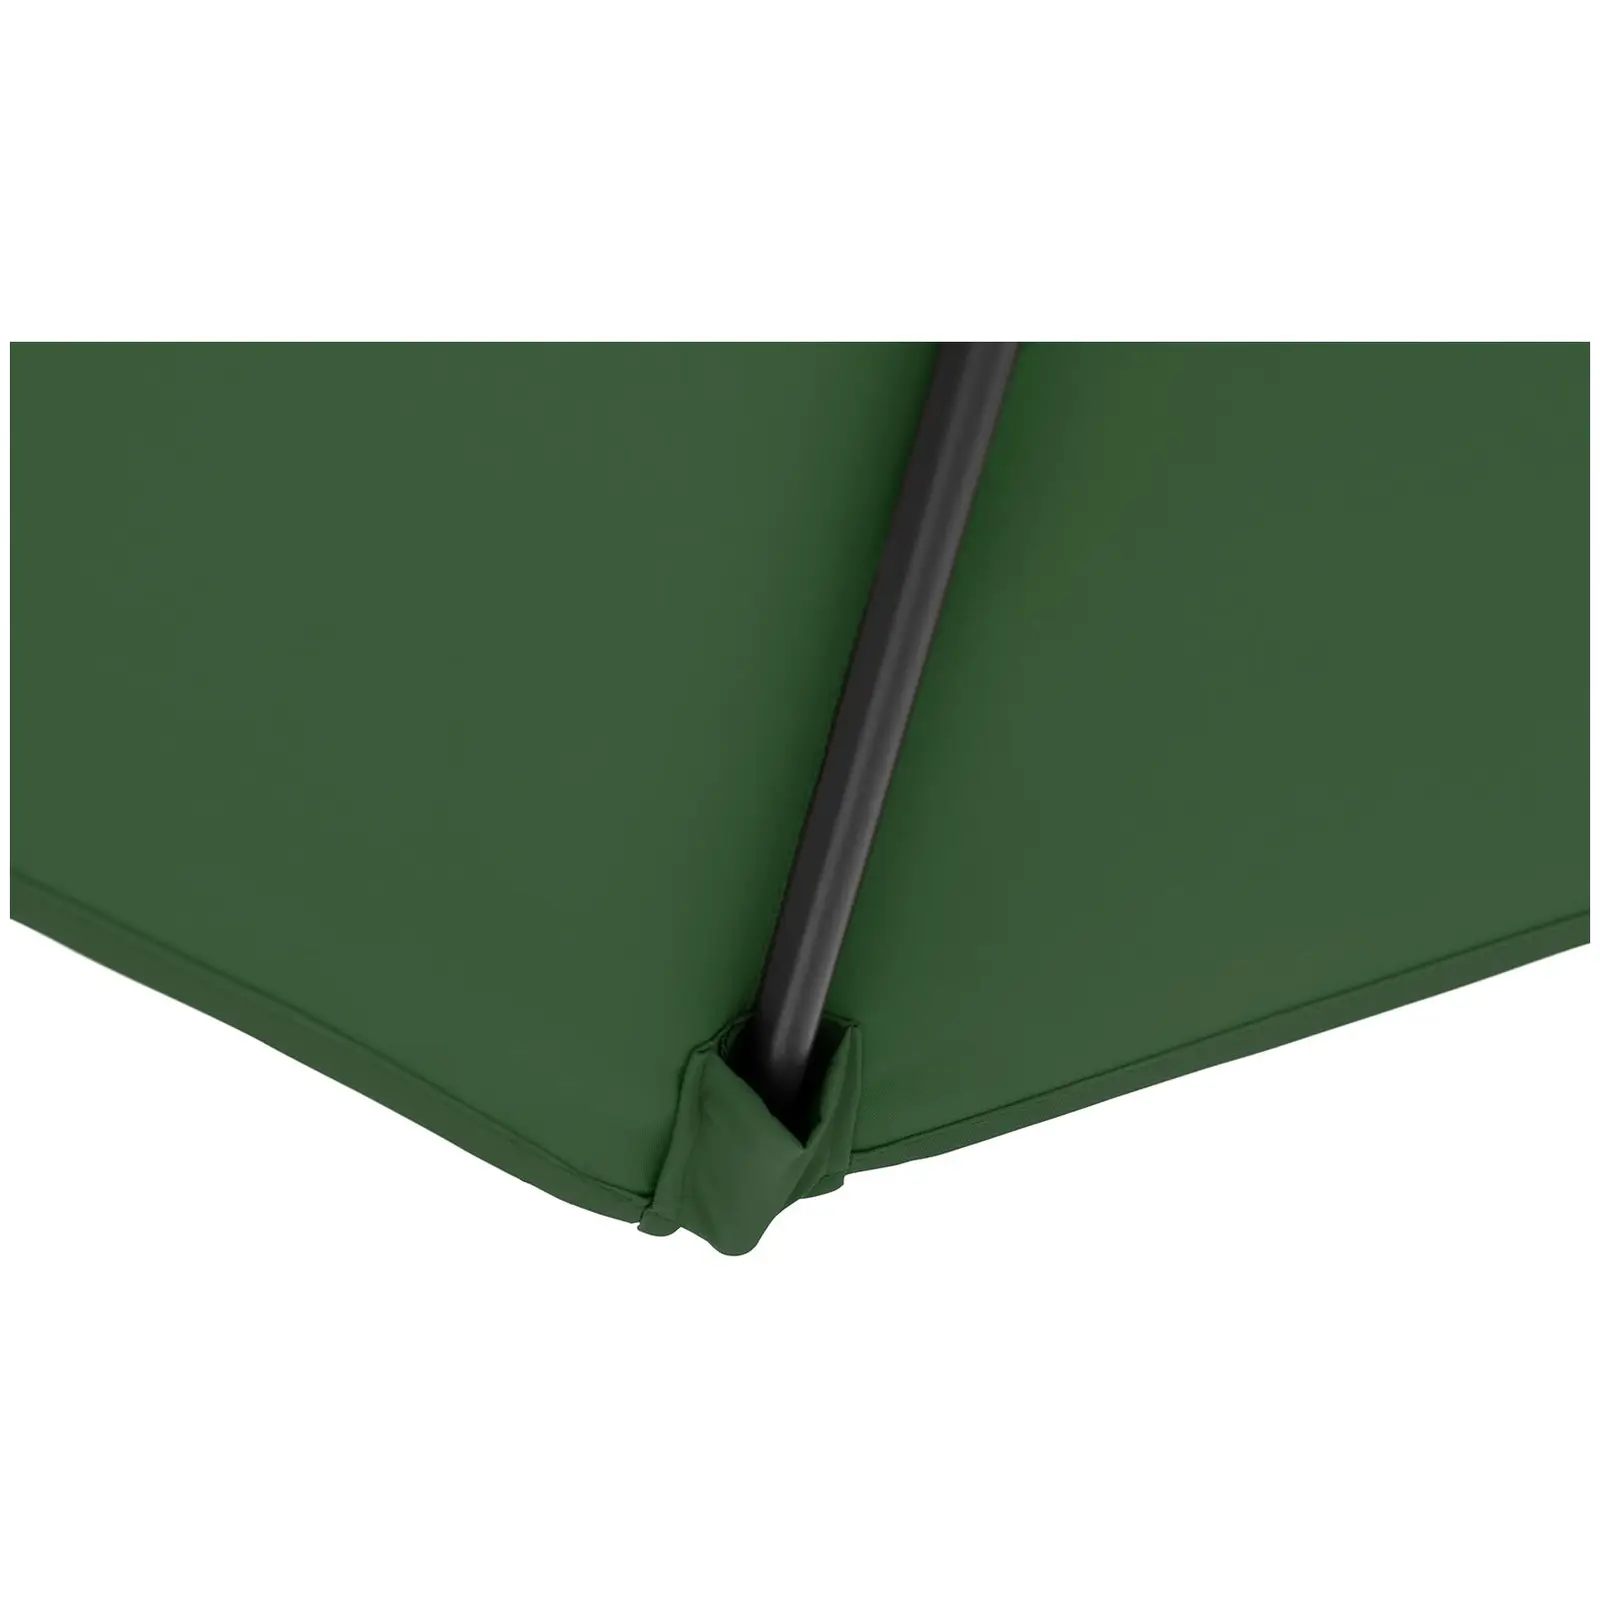 B-varer Parasoll - Grønn - sekskantet - Ø 300 cm - vippbar